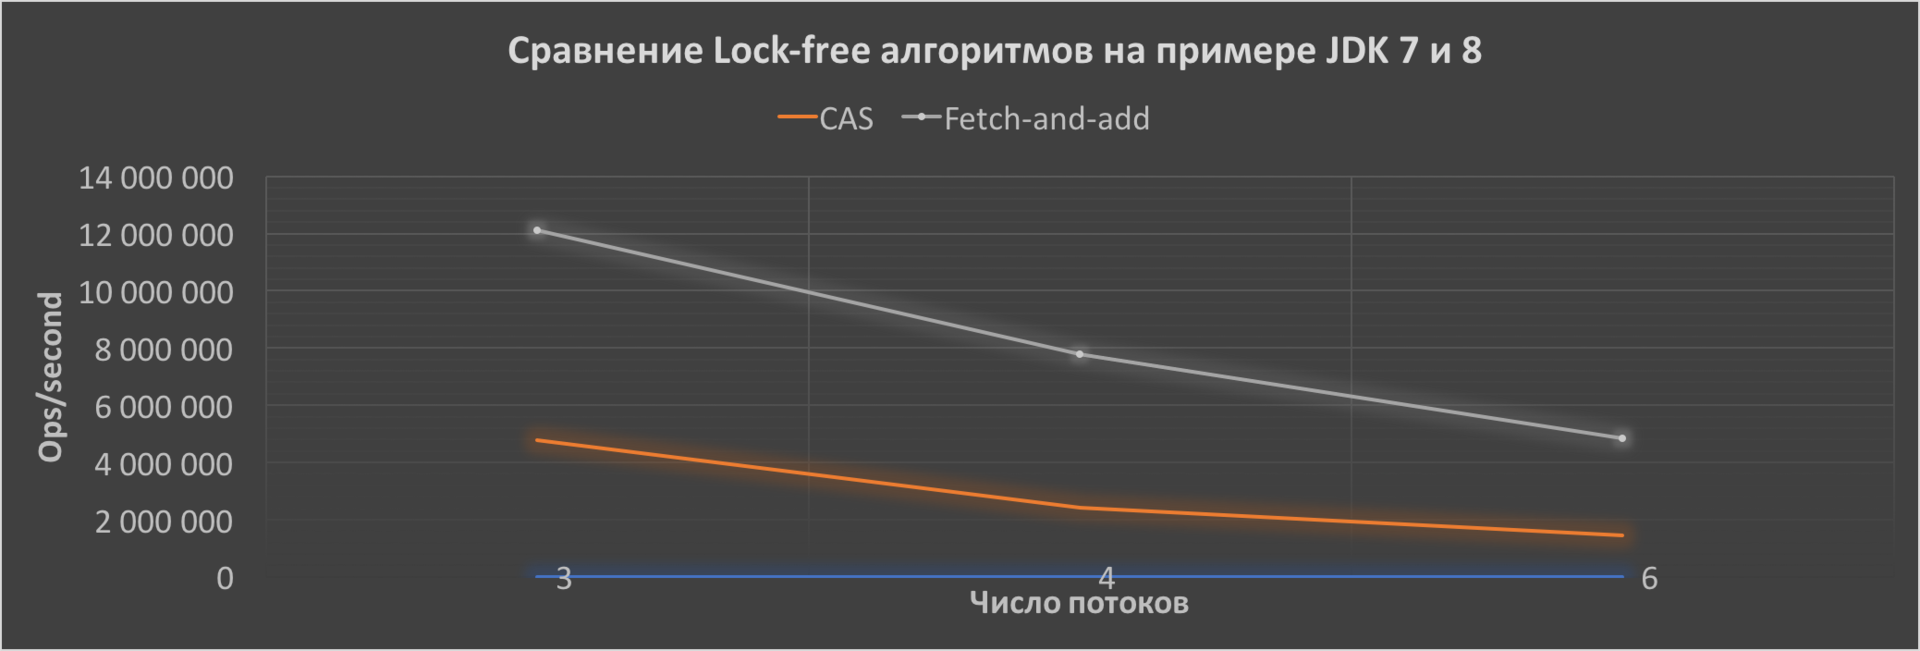 Сравнение Lock-free алгоритмов — CAS и FAA на примере JDK 7 и 8 - 2